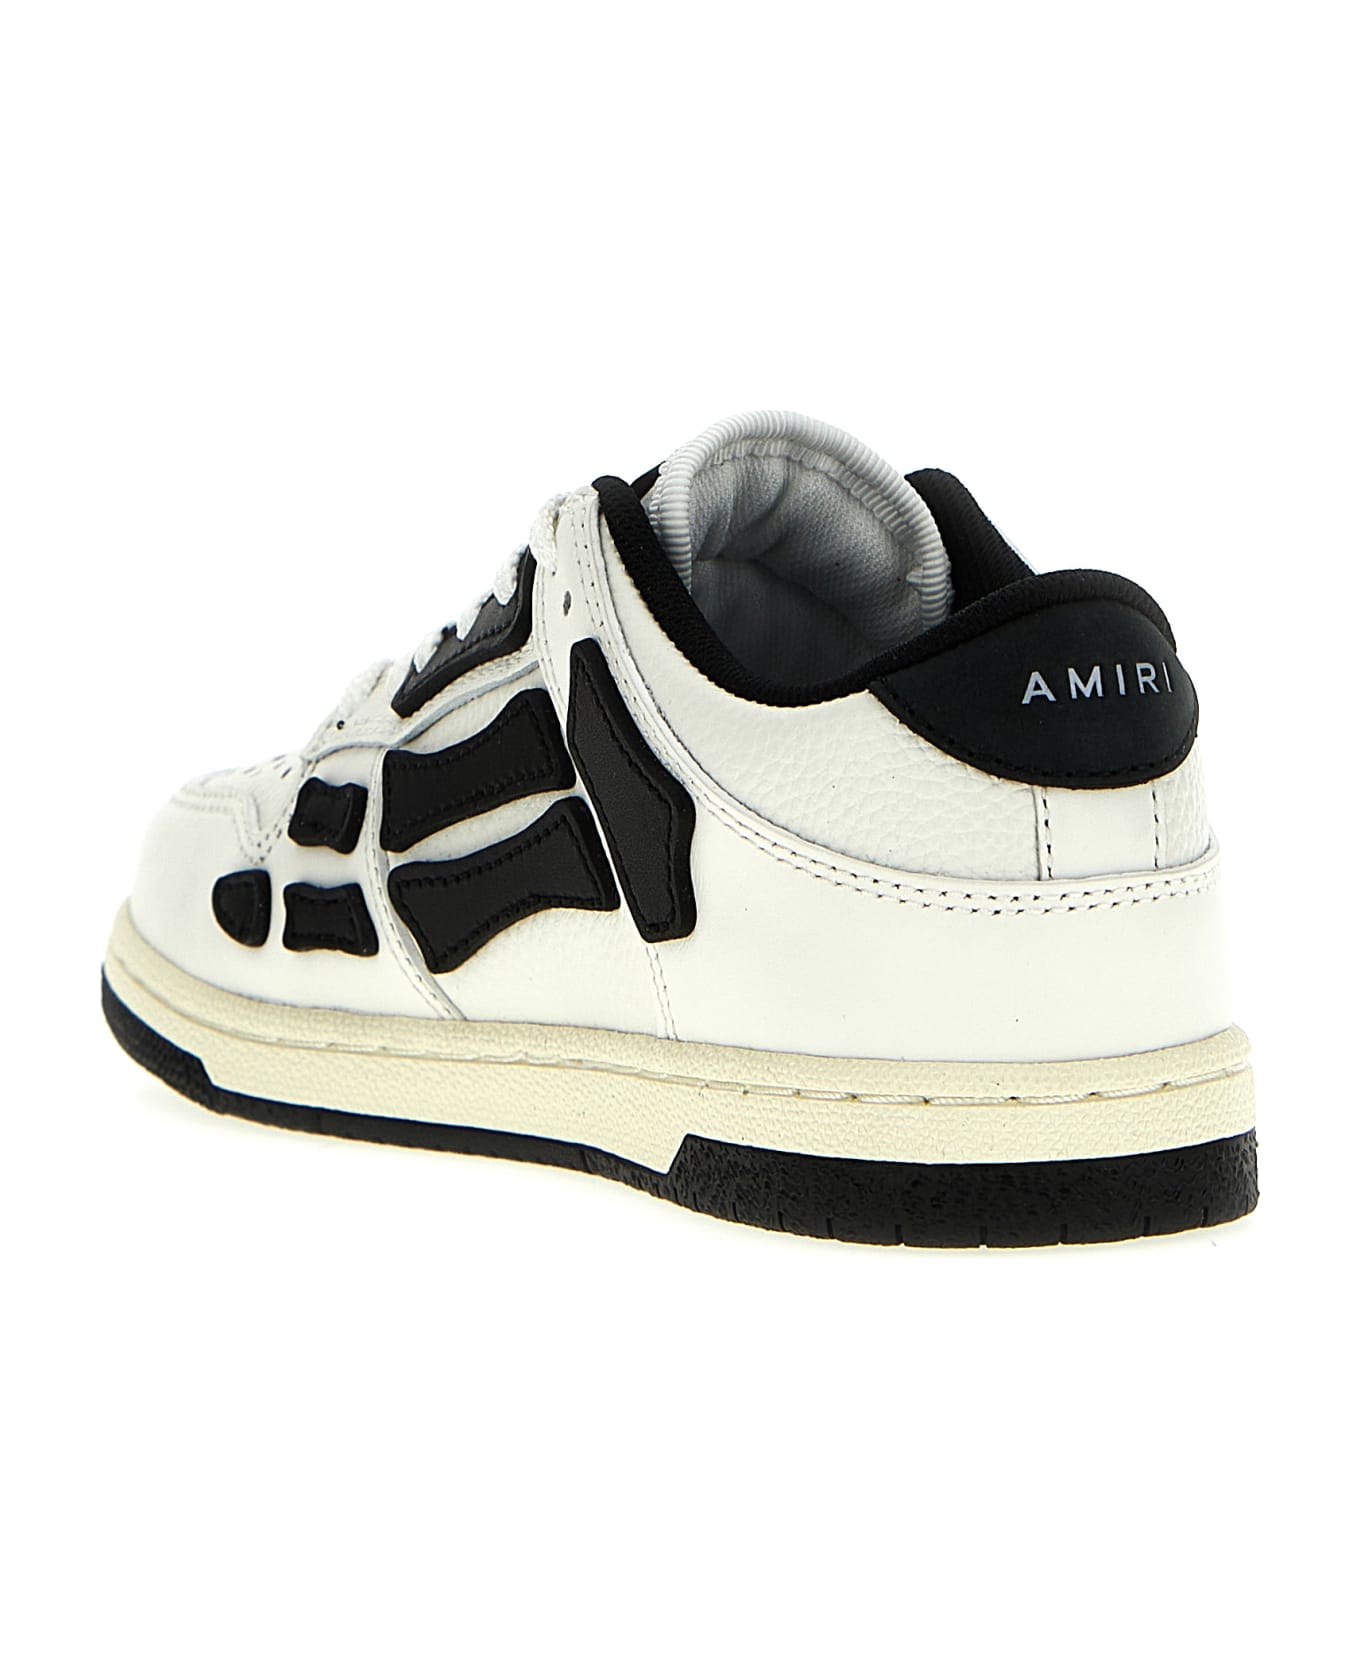 AMIRI 'asymmetric Low' Sneakers - White Black シューズ